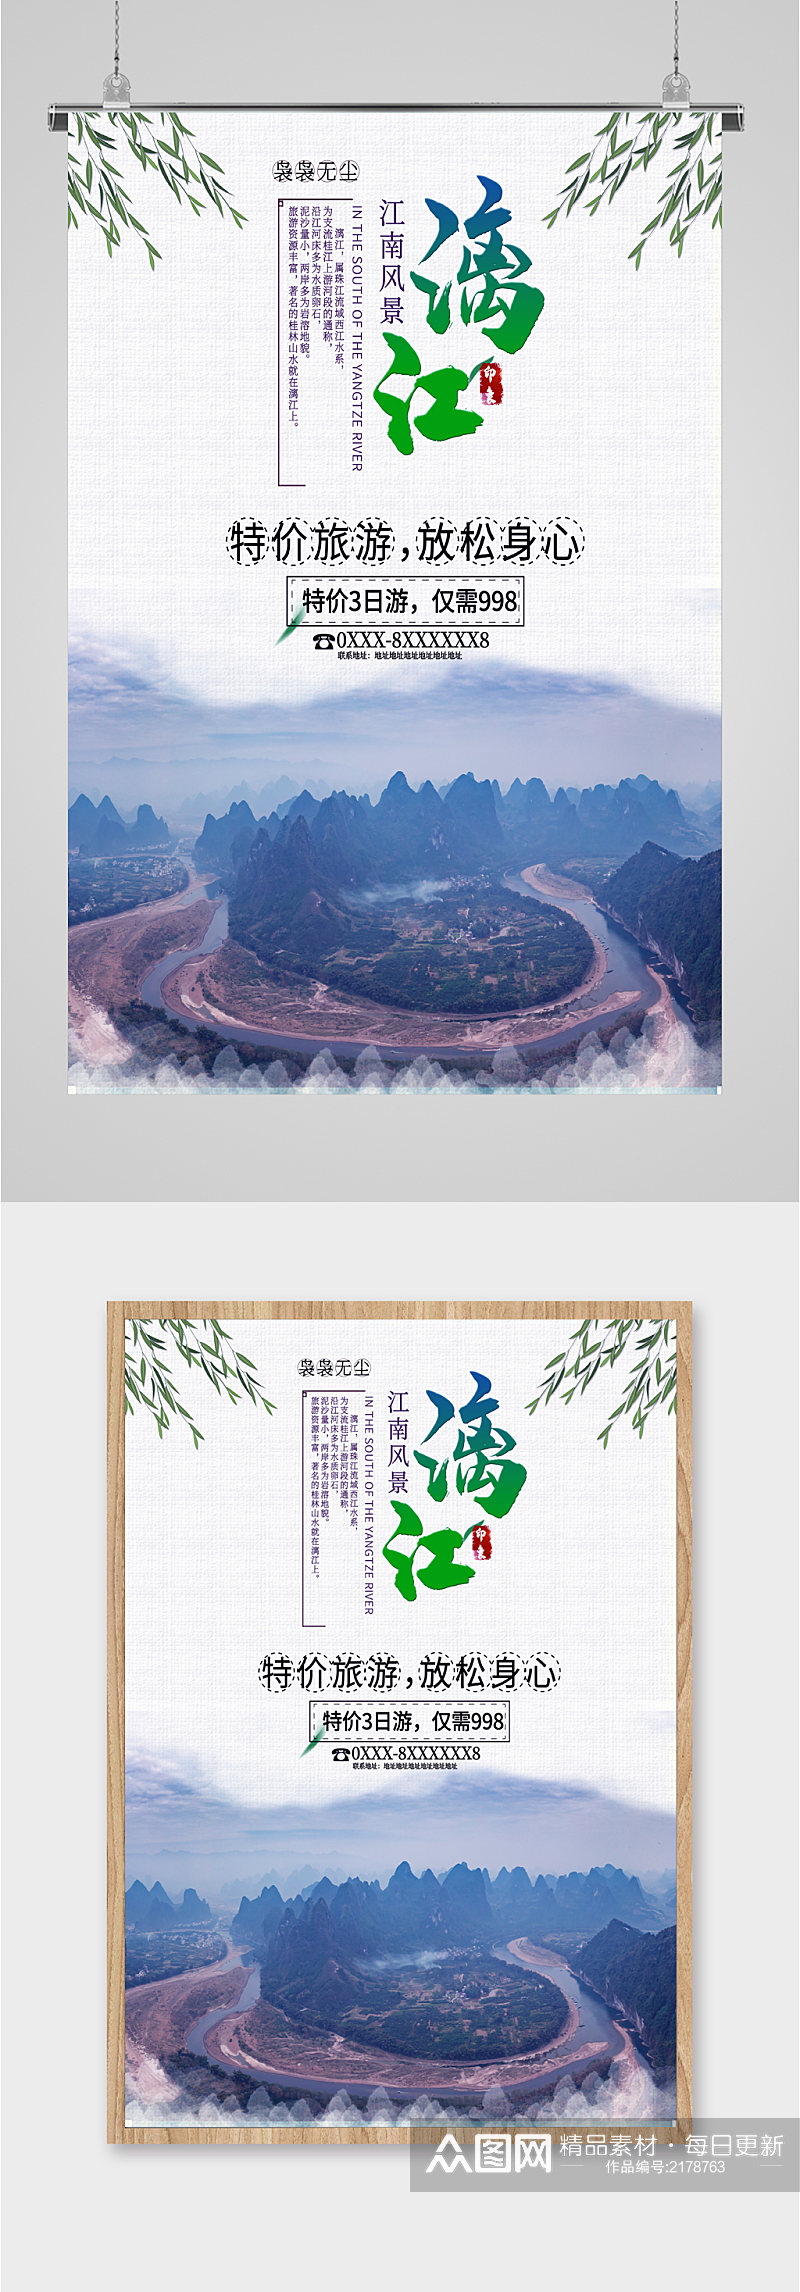 漓江风景旅游海报素材